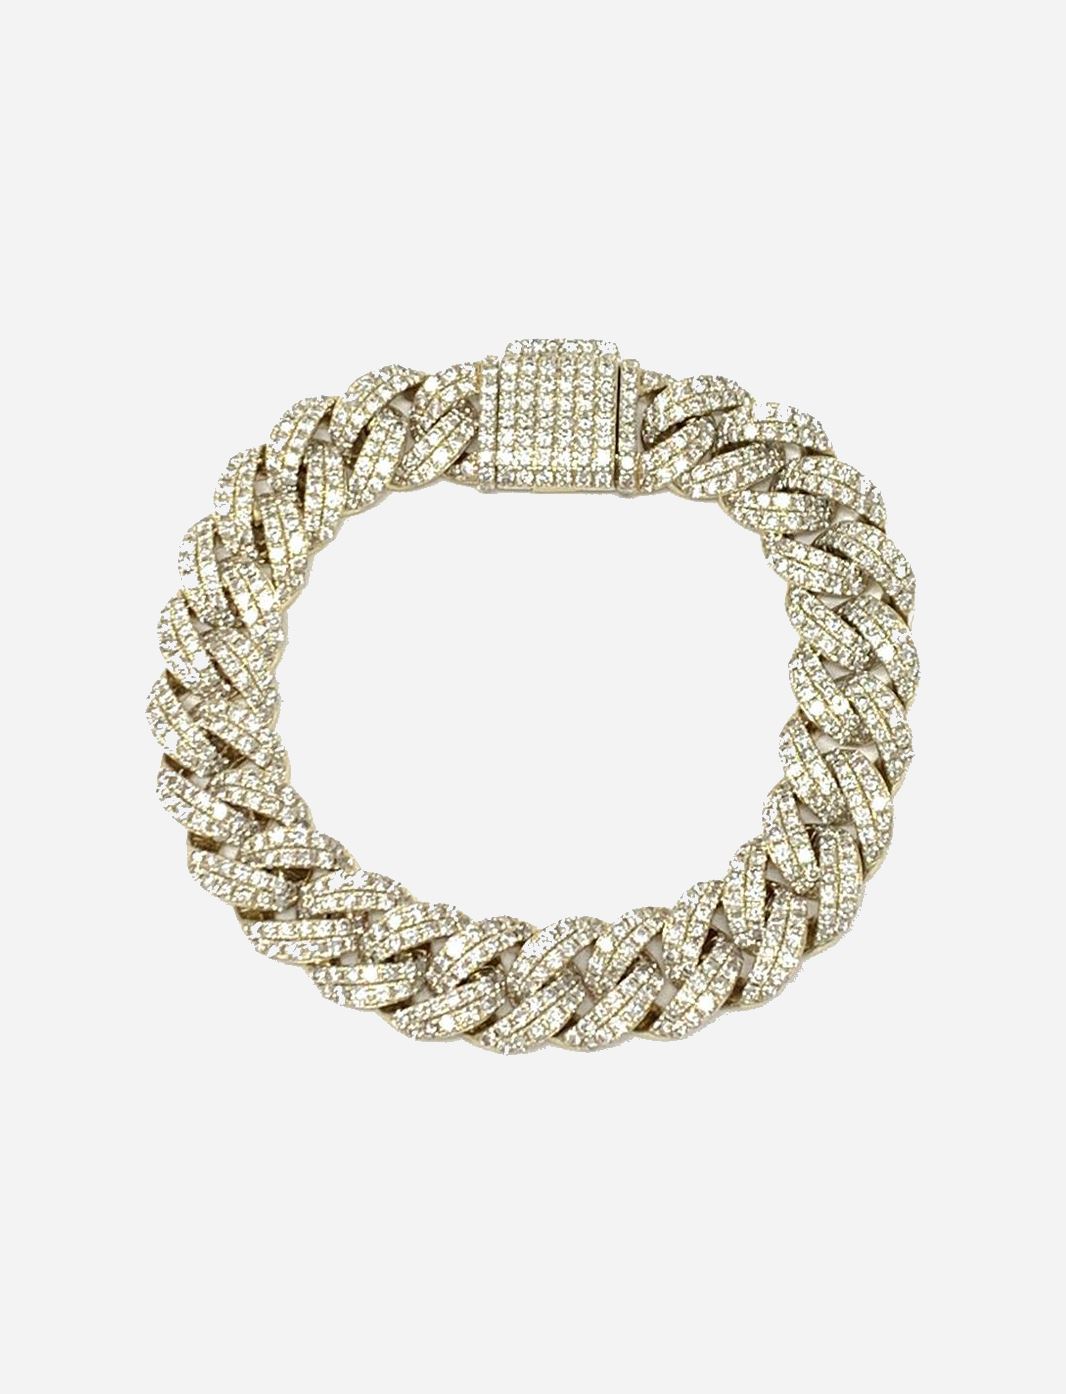 Large Pave Diamond Link Bracelet